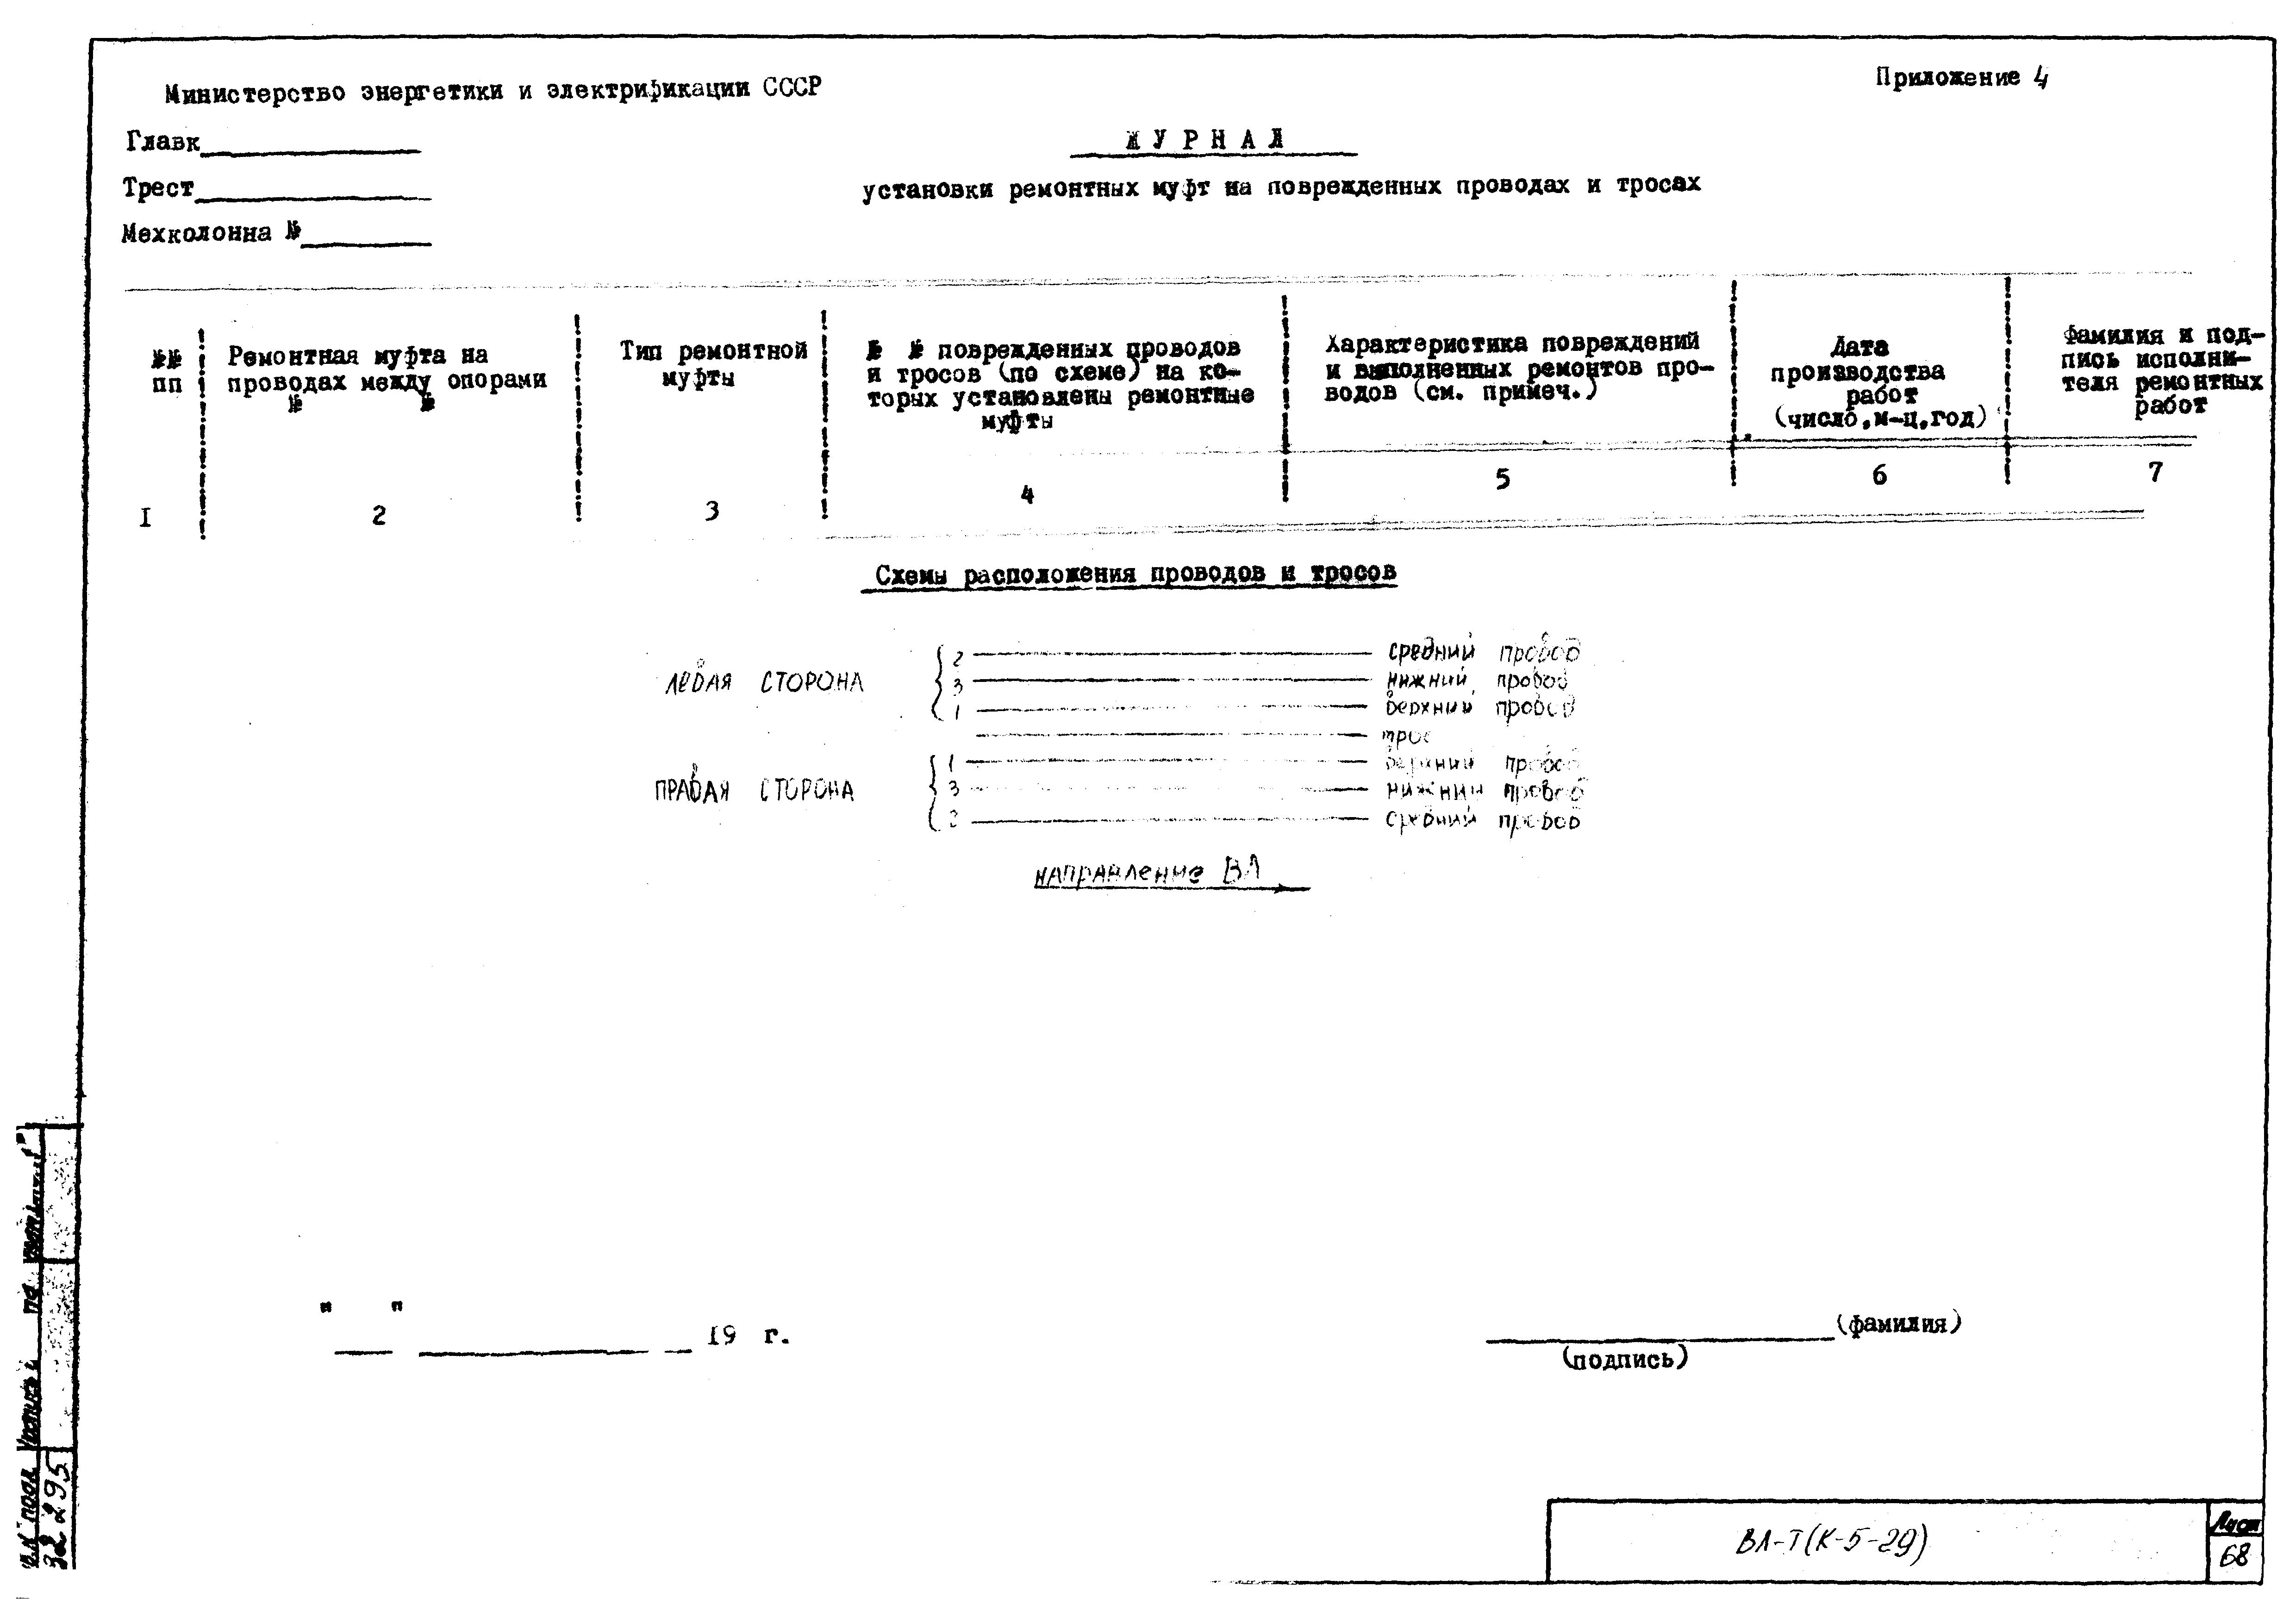 Технологическая карта К-5-29-1